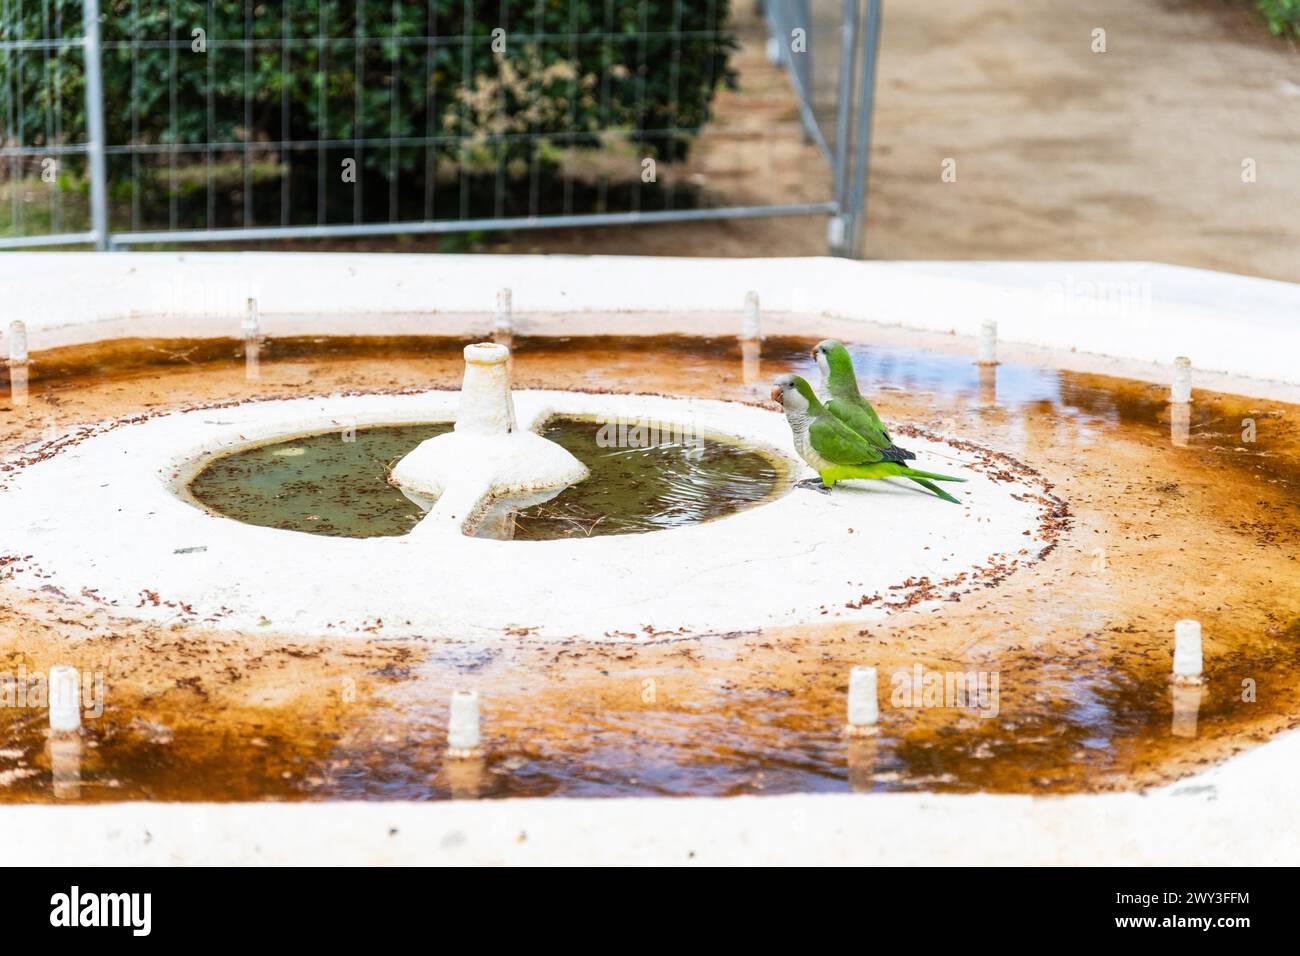 Oiseaux buvant à l'embouchure d'un puits désaffecté en raison de la pénurie d'eau à Barcelone, Espagne Banque D'Images